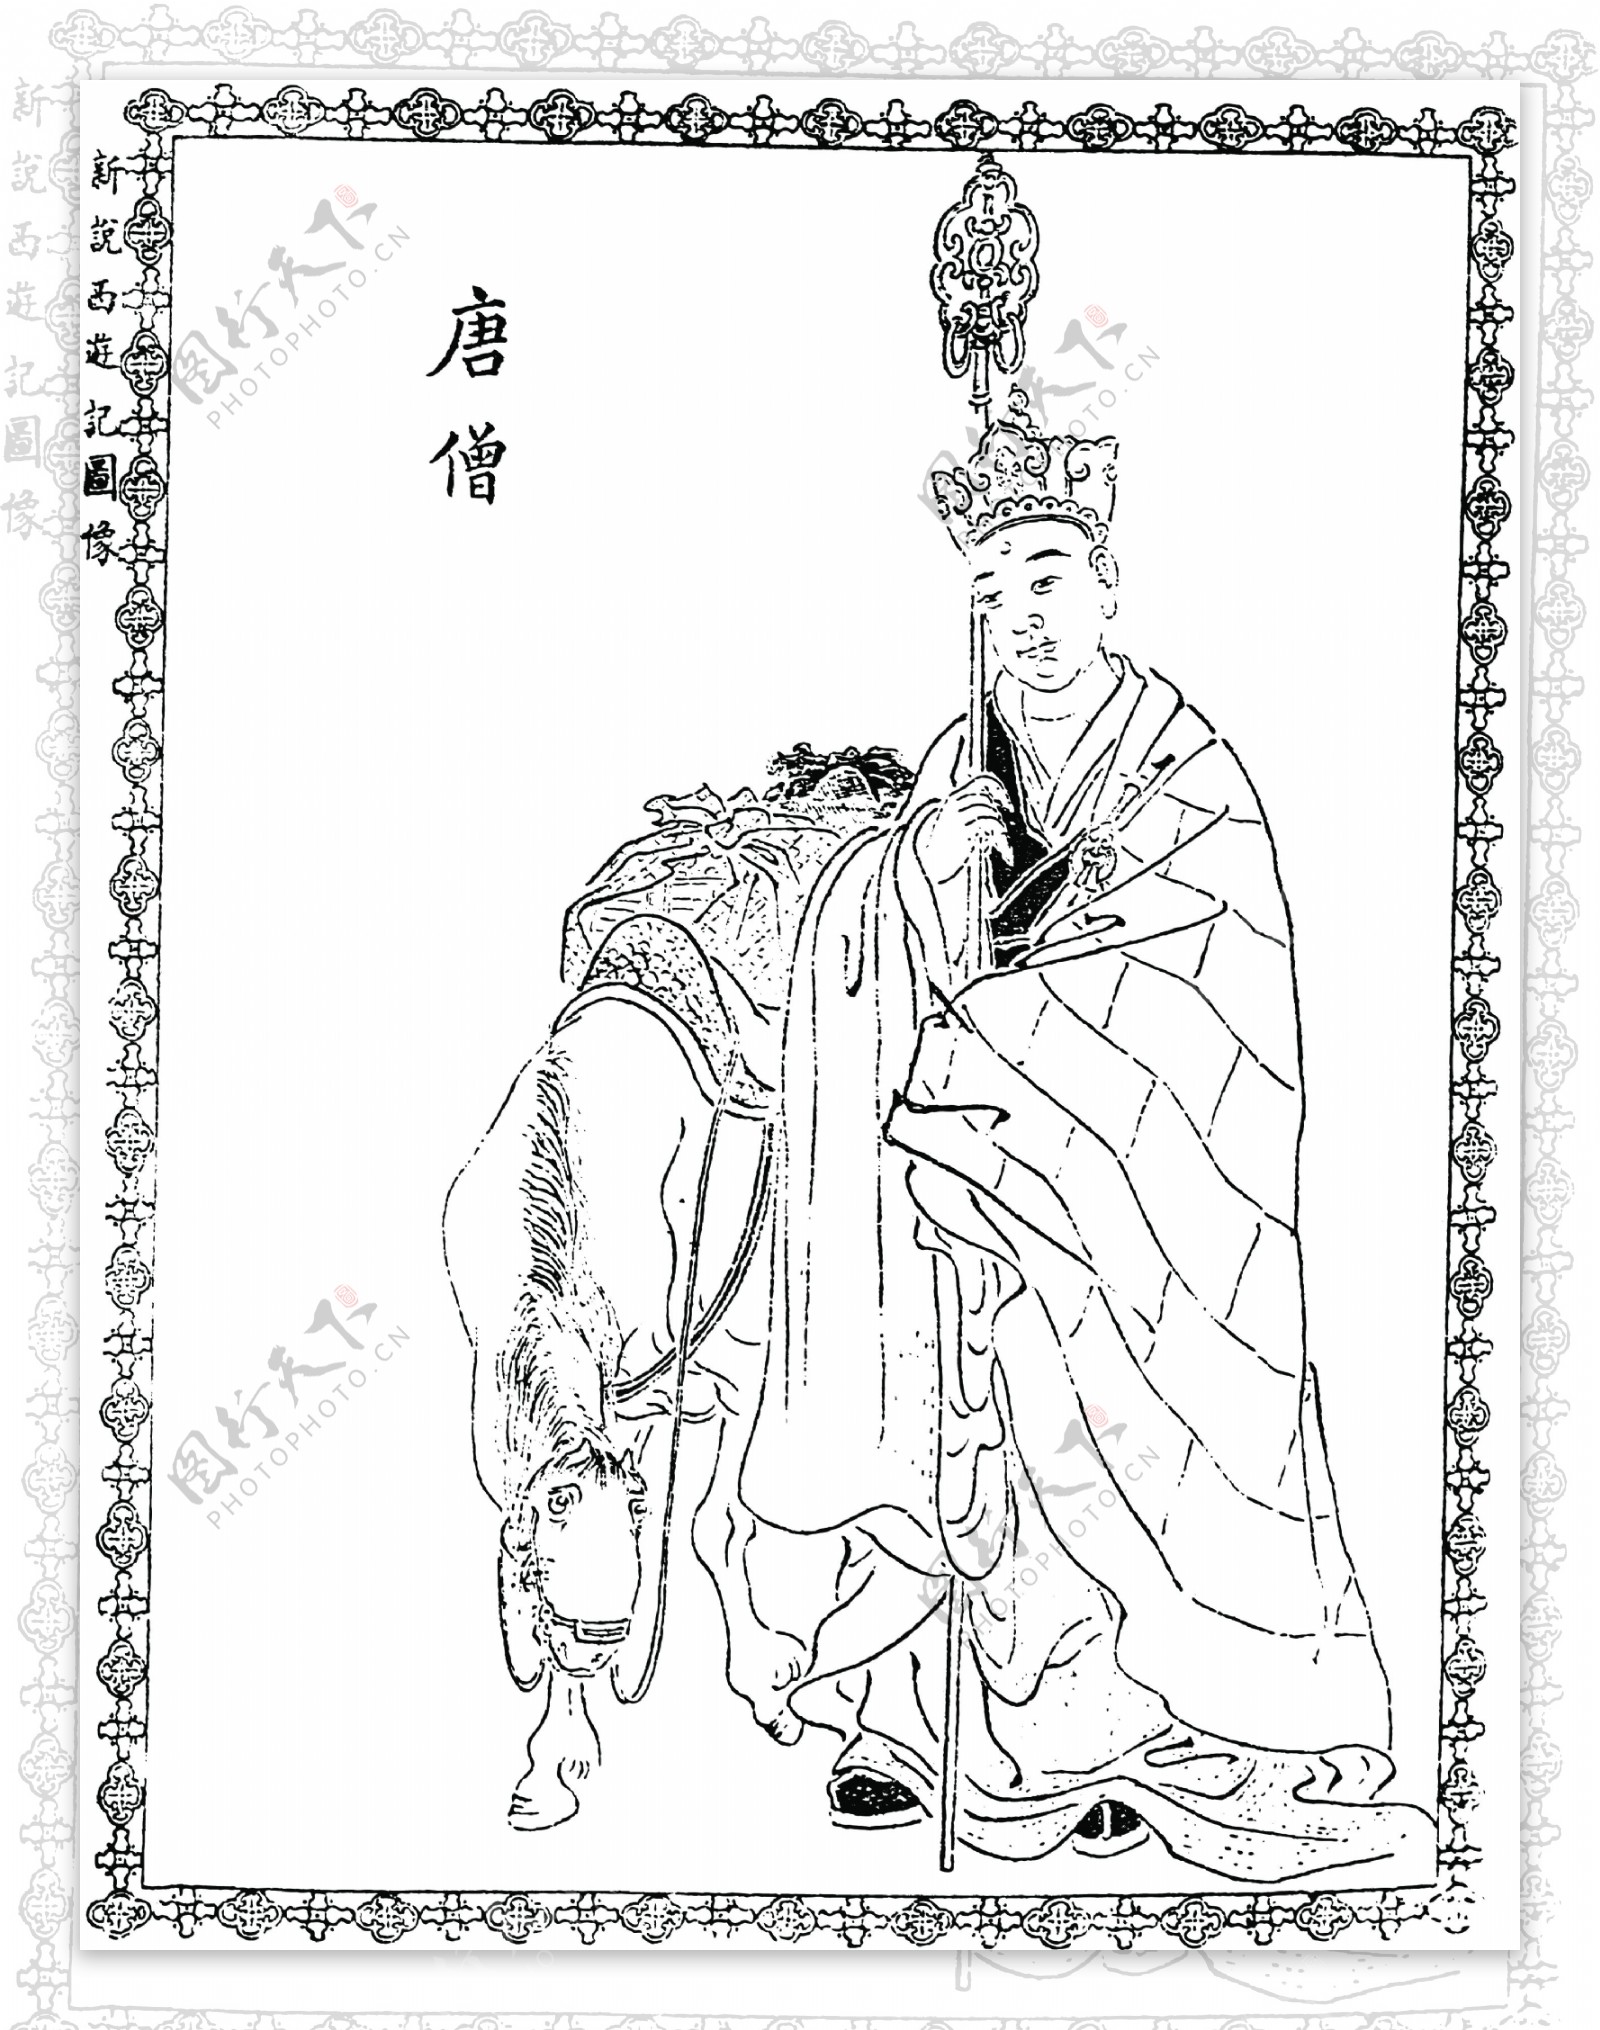 中国古典文学插图木刻版画中国传统文化44